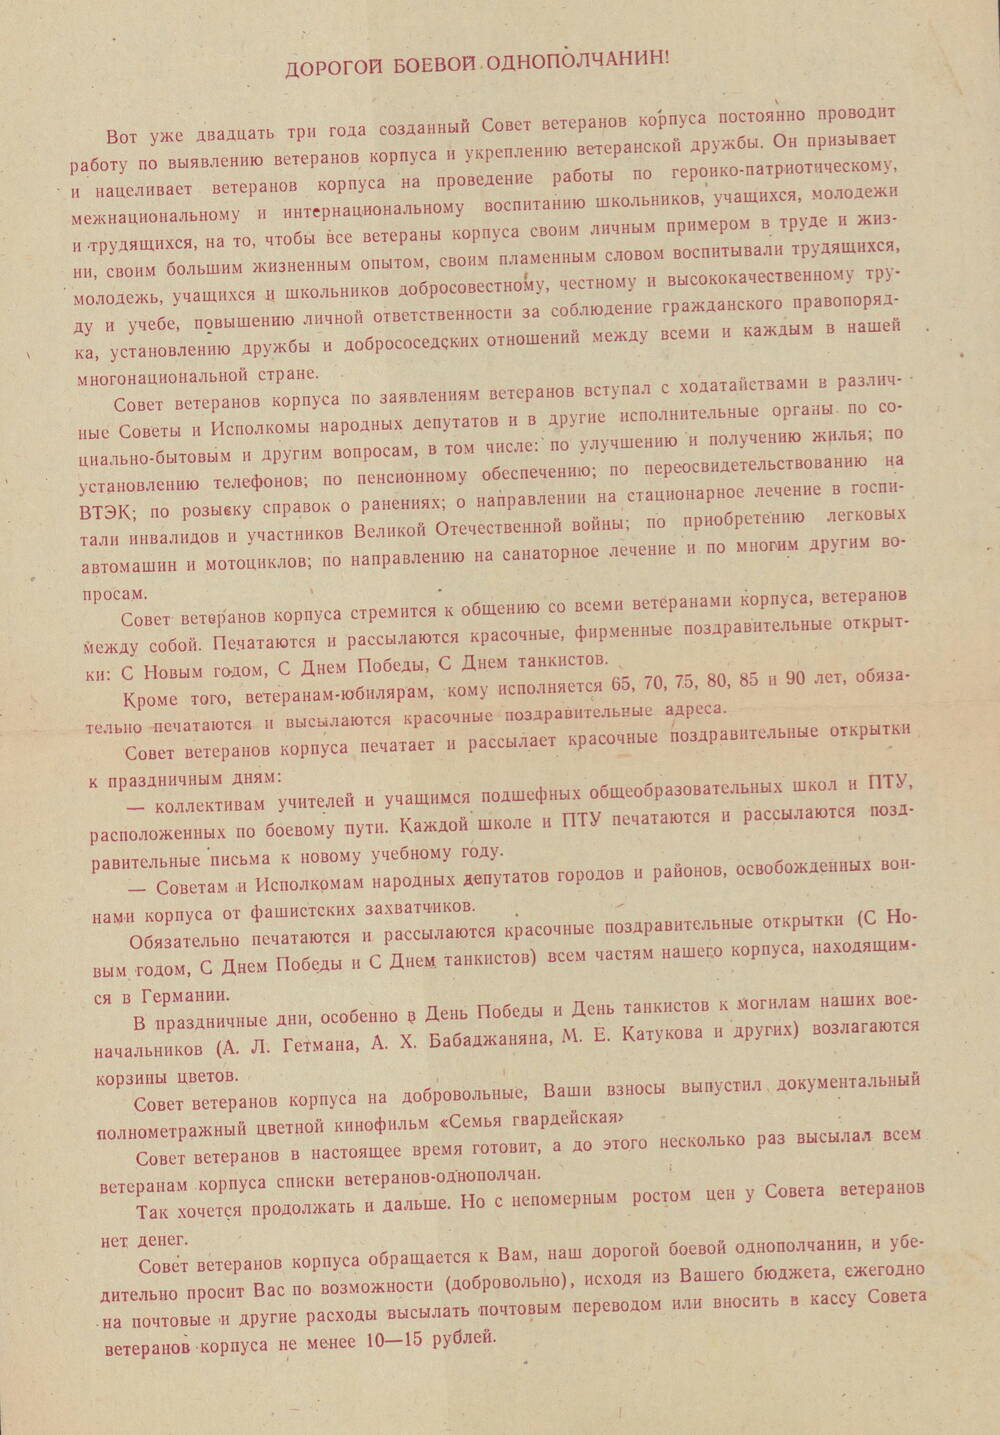 Письмо обращение к П.Д. Бабенко от Совета ветеранов 11-го гвардейского Прикарпатско-Берлинского, Краснознаменного и ордена Суворова танкового корпуса.